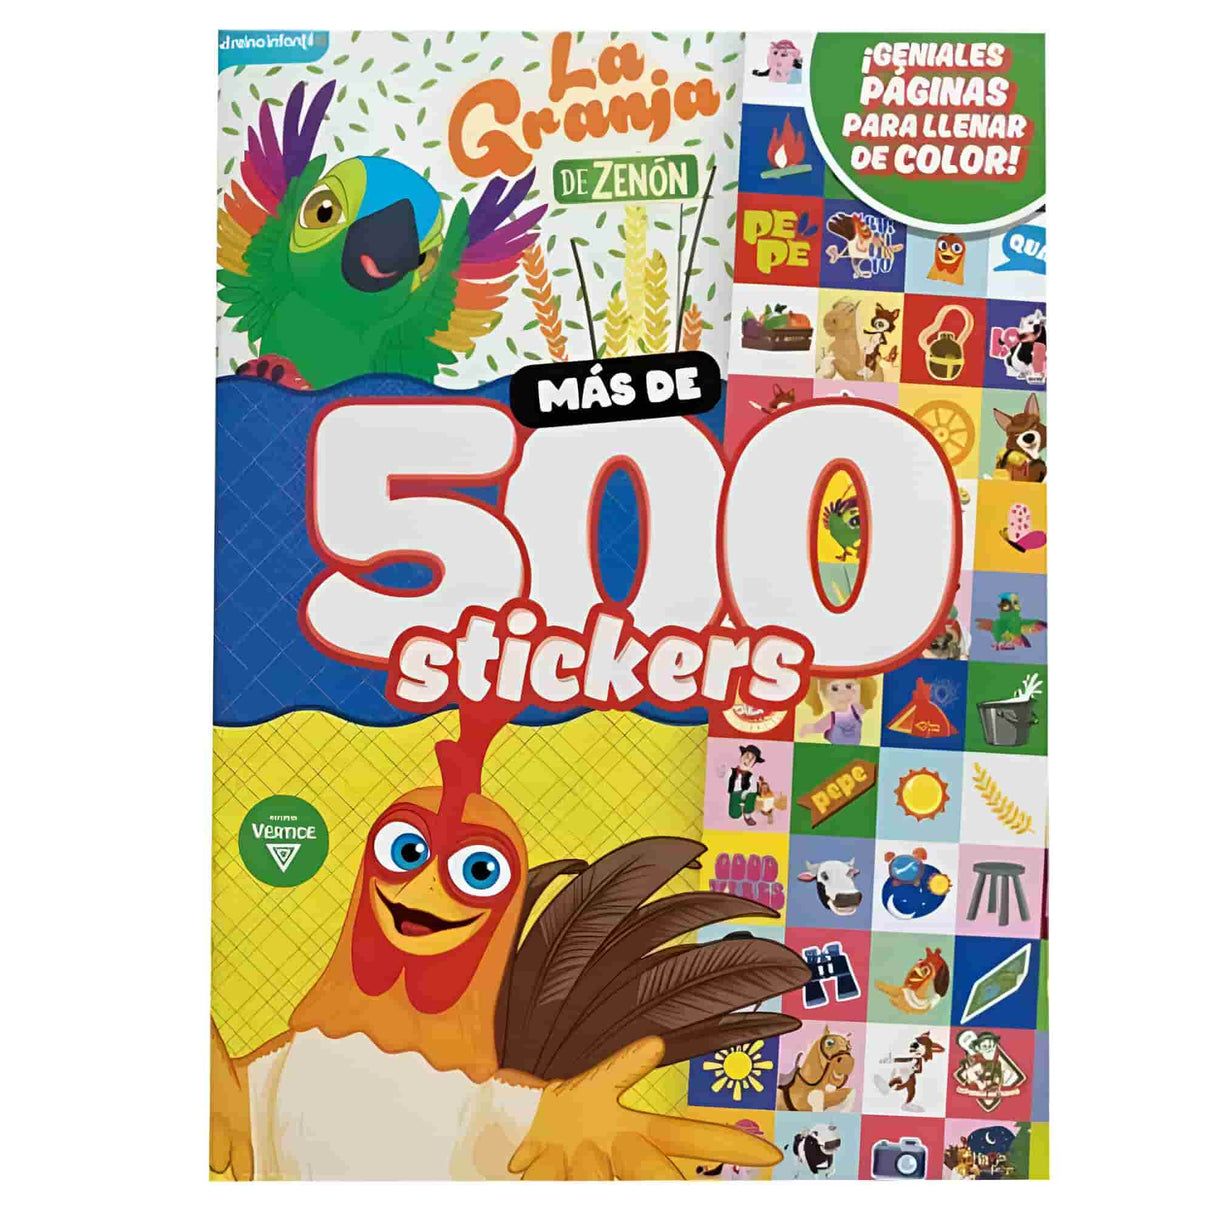 Vertice - Pack 500 Stickers y más La Granja de Zenón